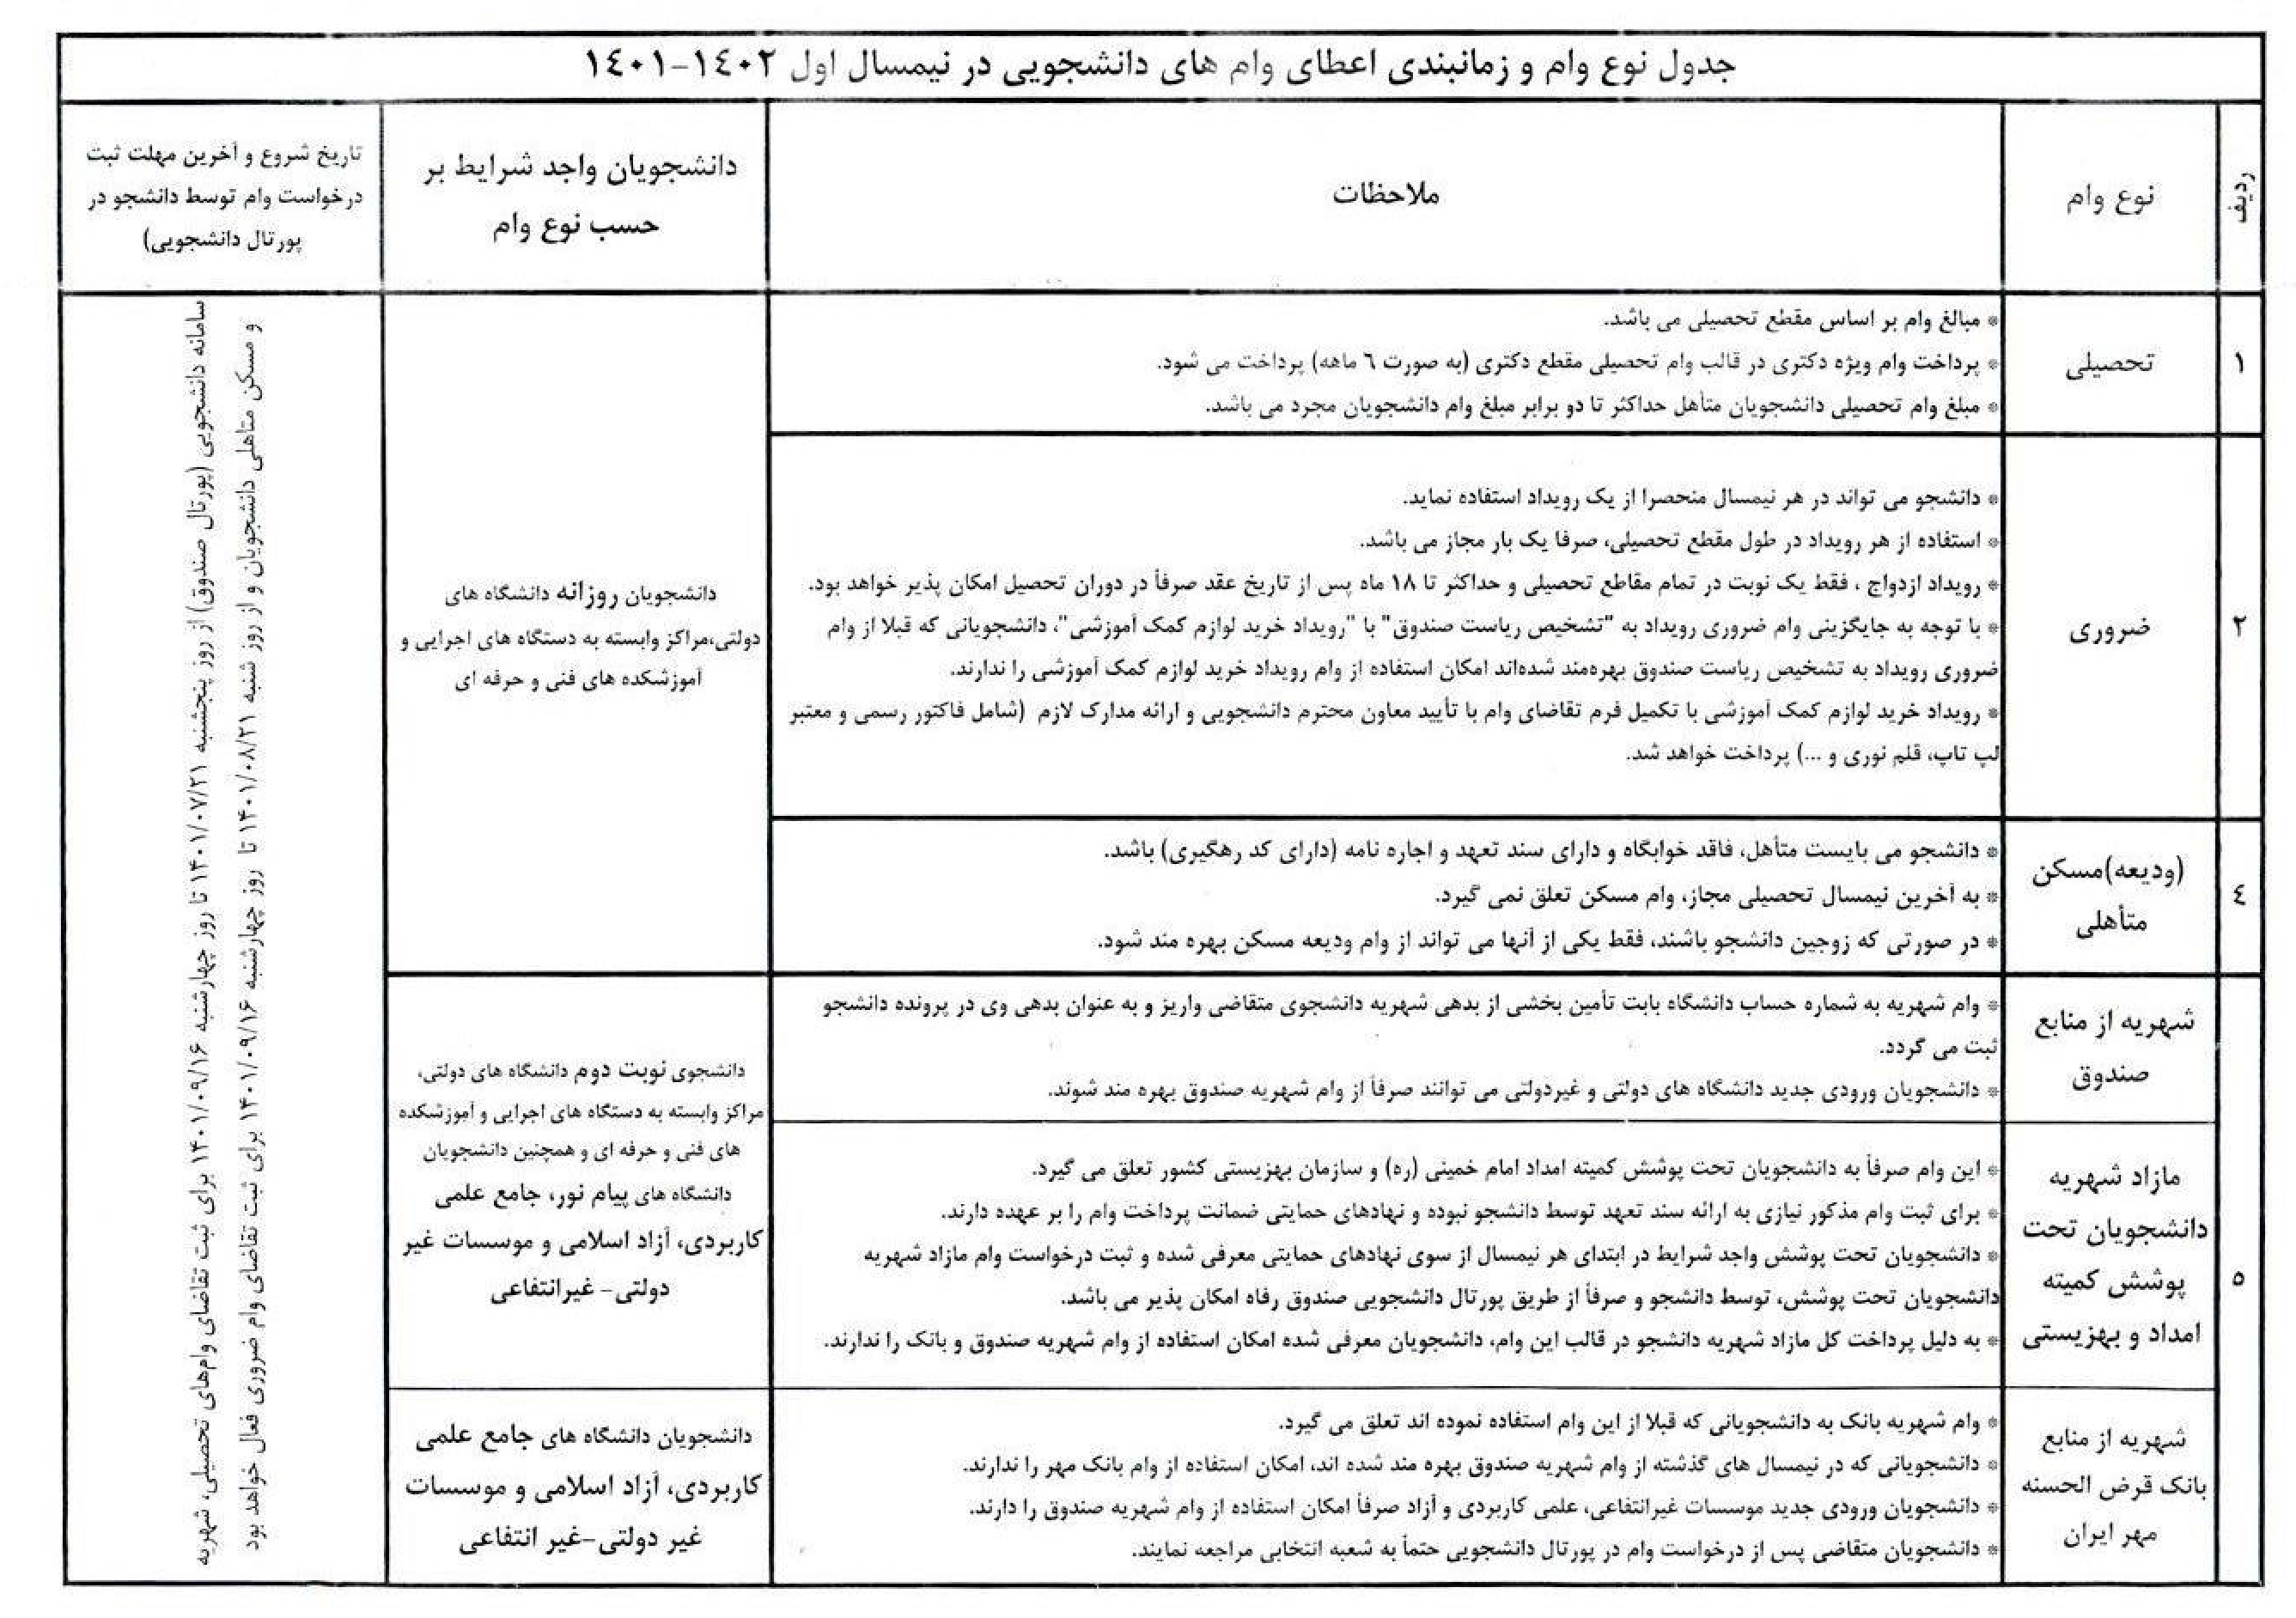 آغاز ثبت نام وام هاي دانشجويي از 21 مهر 1401